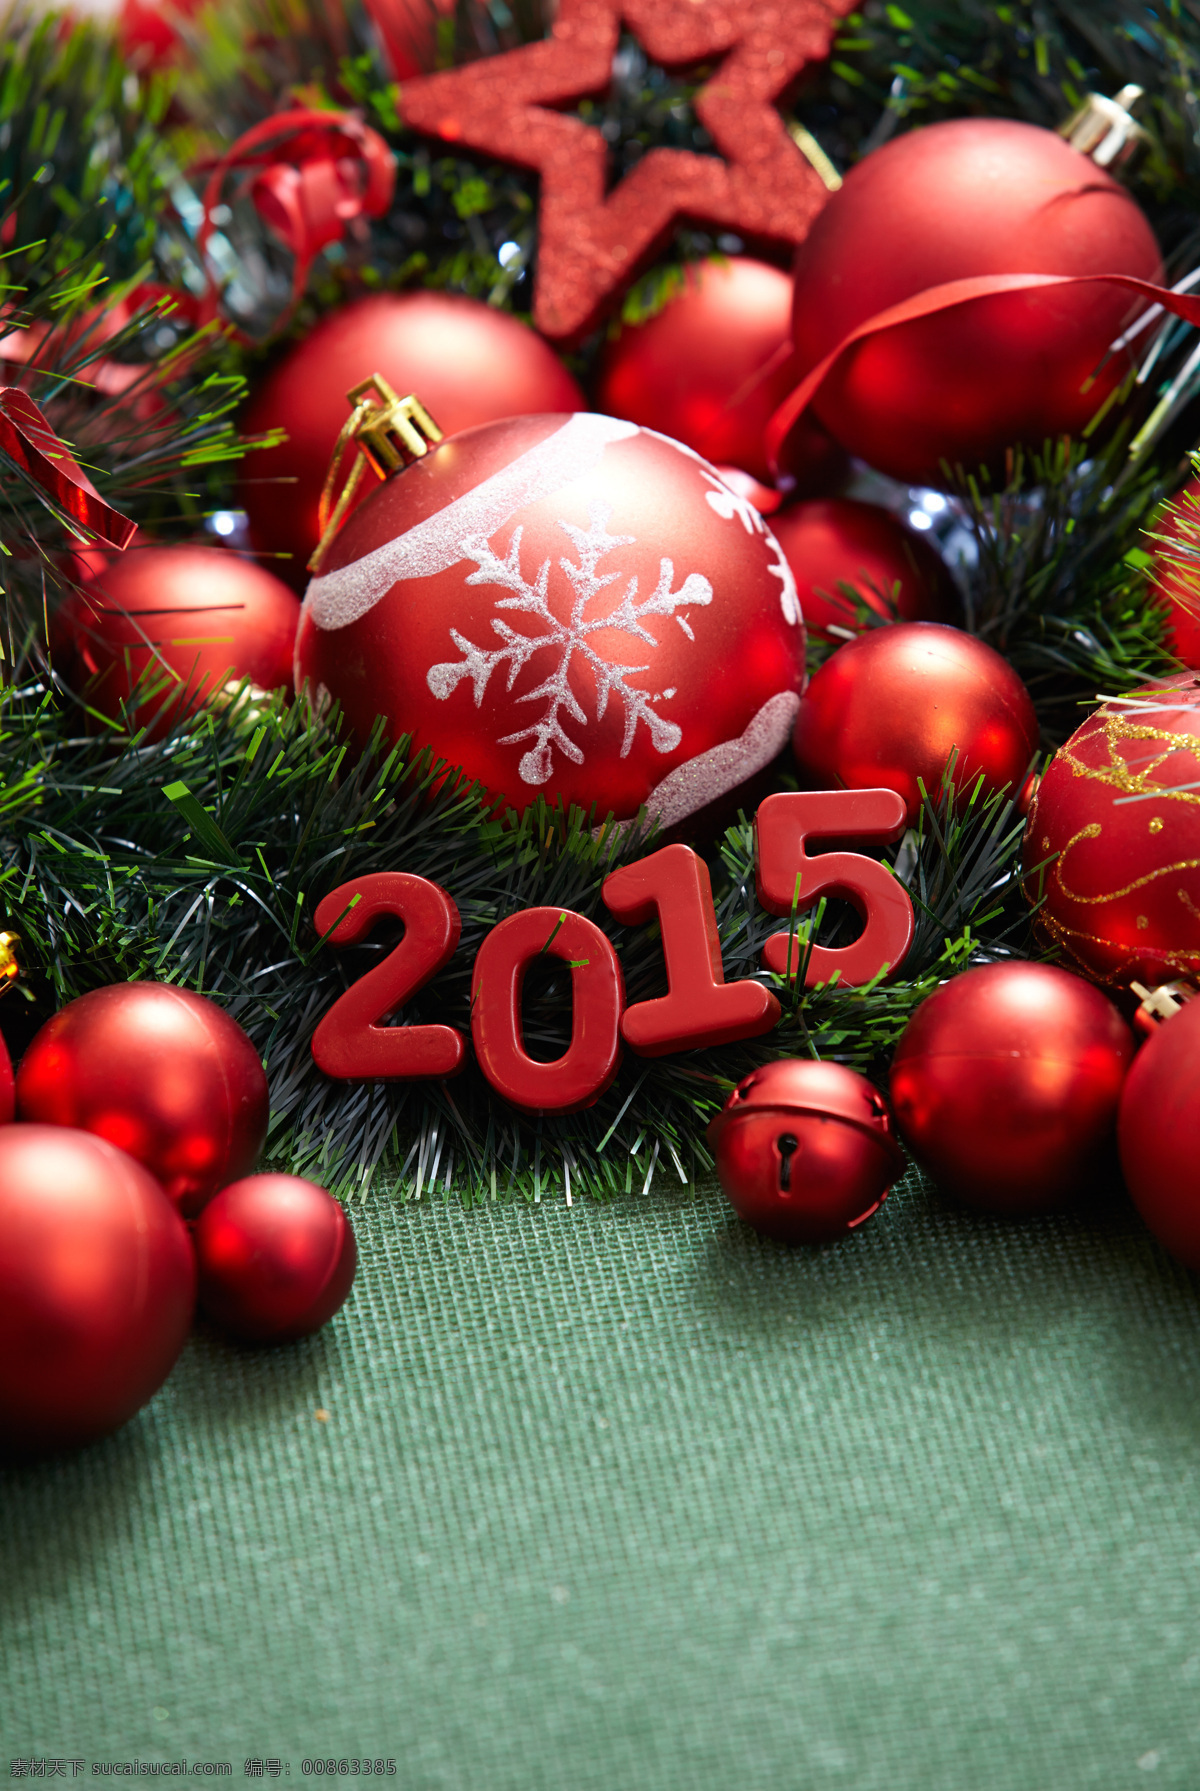 圣诞节 装饰物 2015 新年 圣诞节装饰物 圣诞球 松枝 五角星 圣诞节图片 生活百科